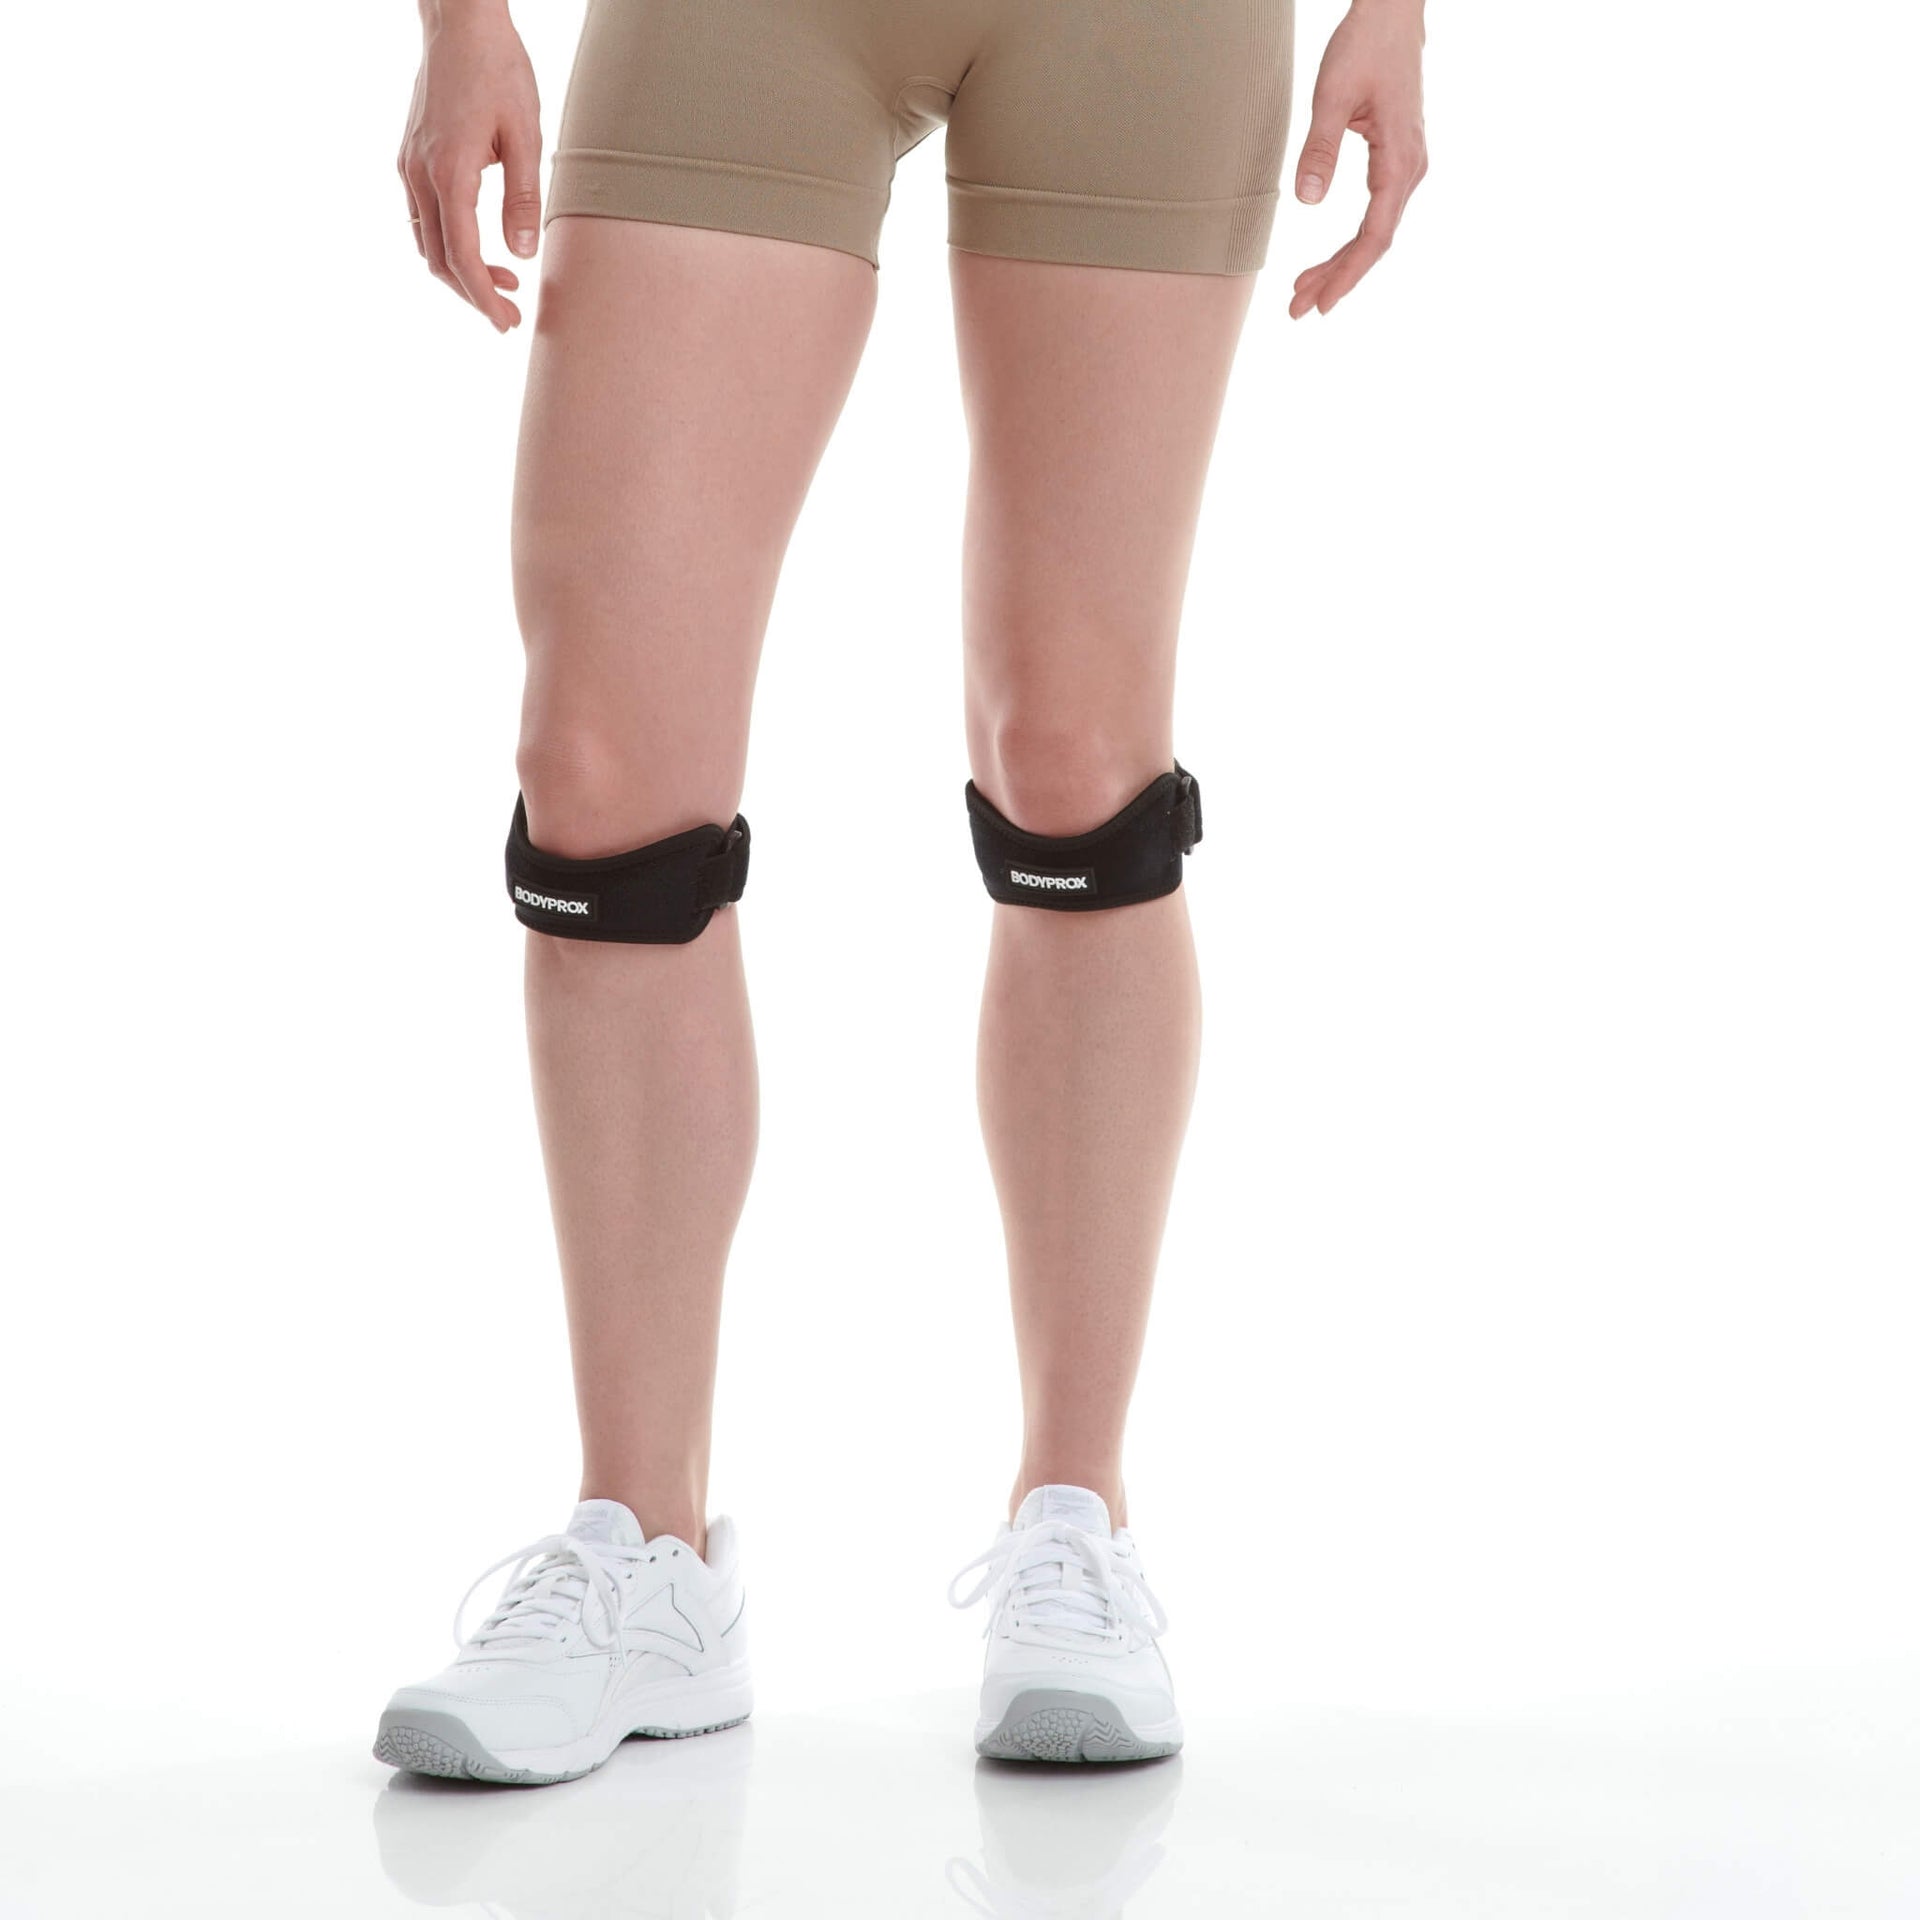 Advanced Orthopaedics Kneed-IT Knee Strap